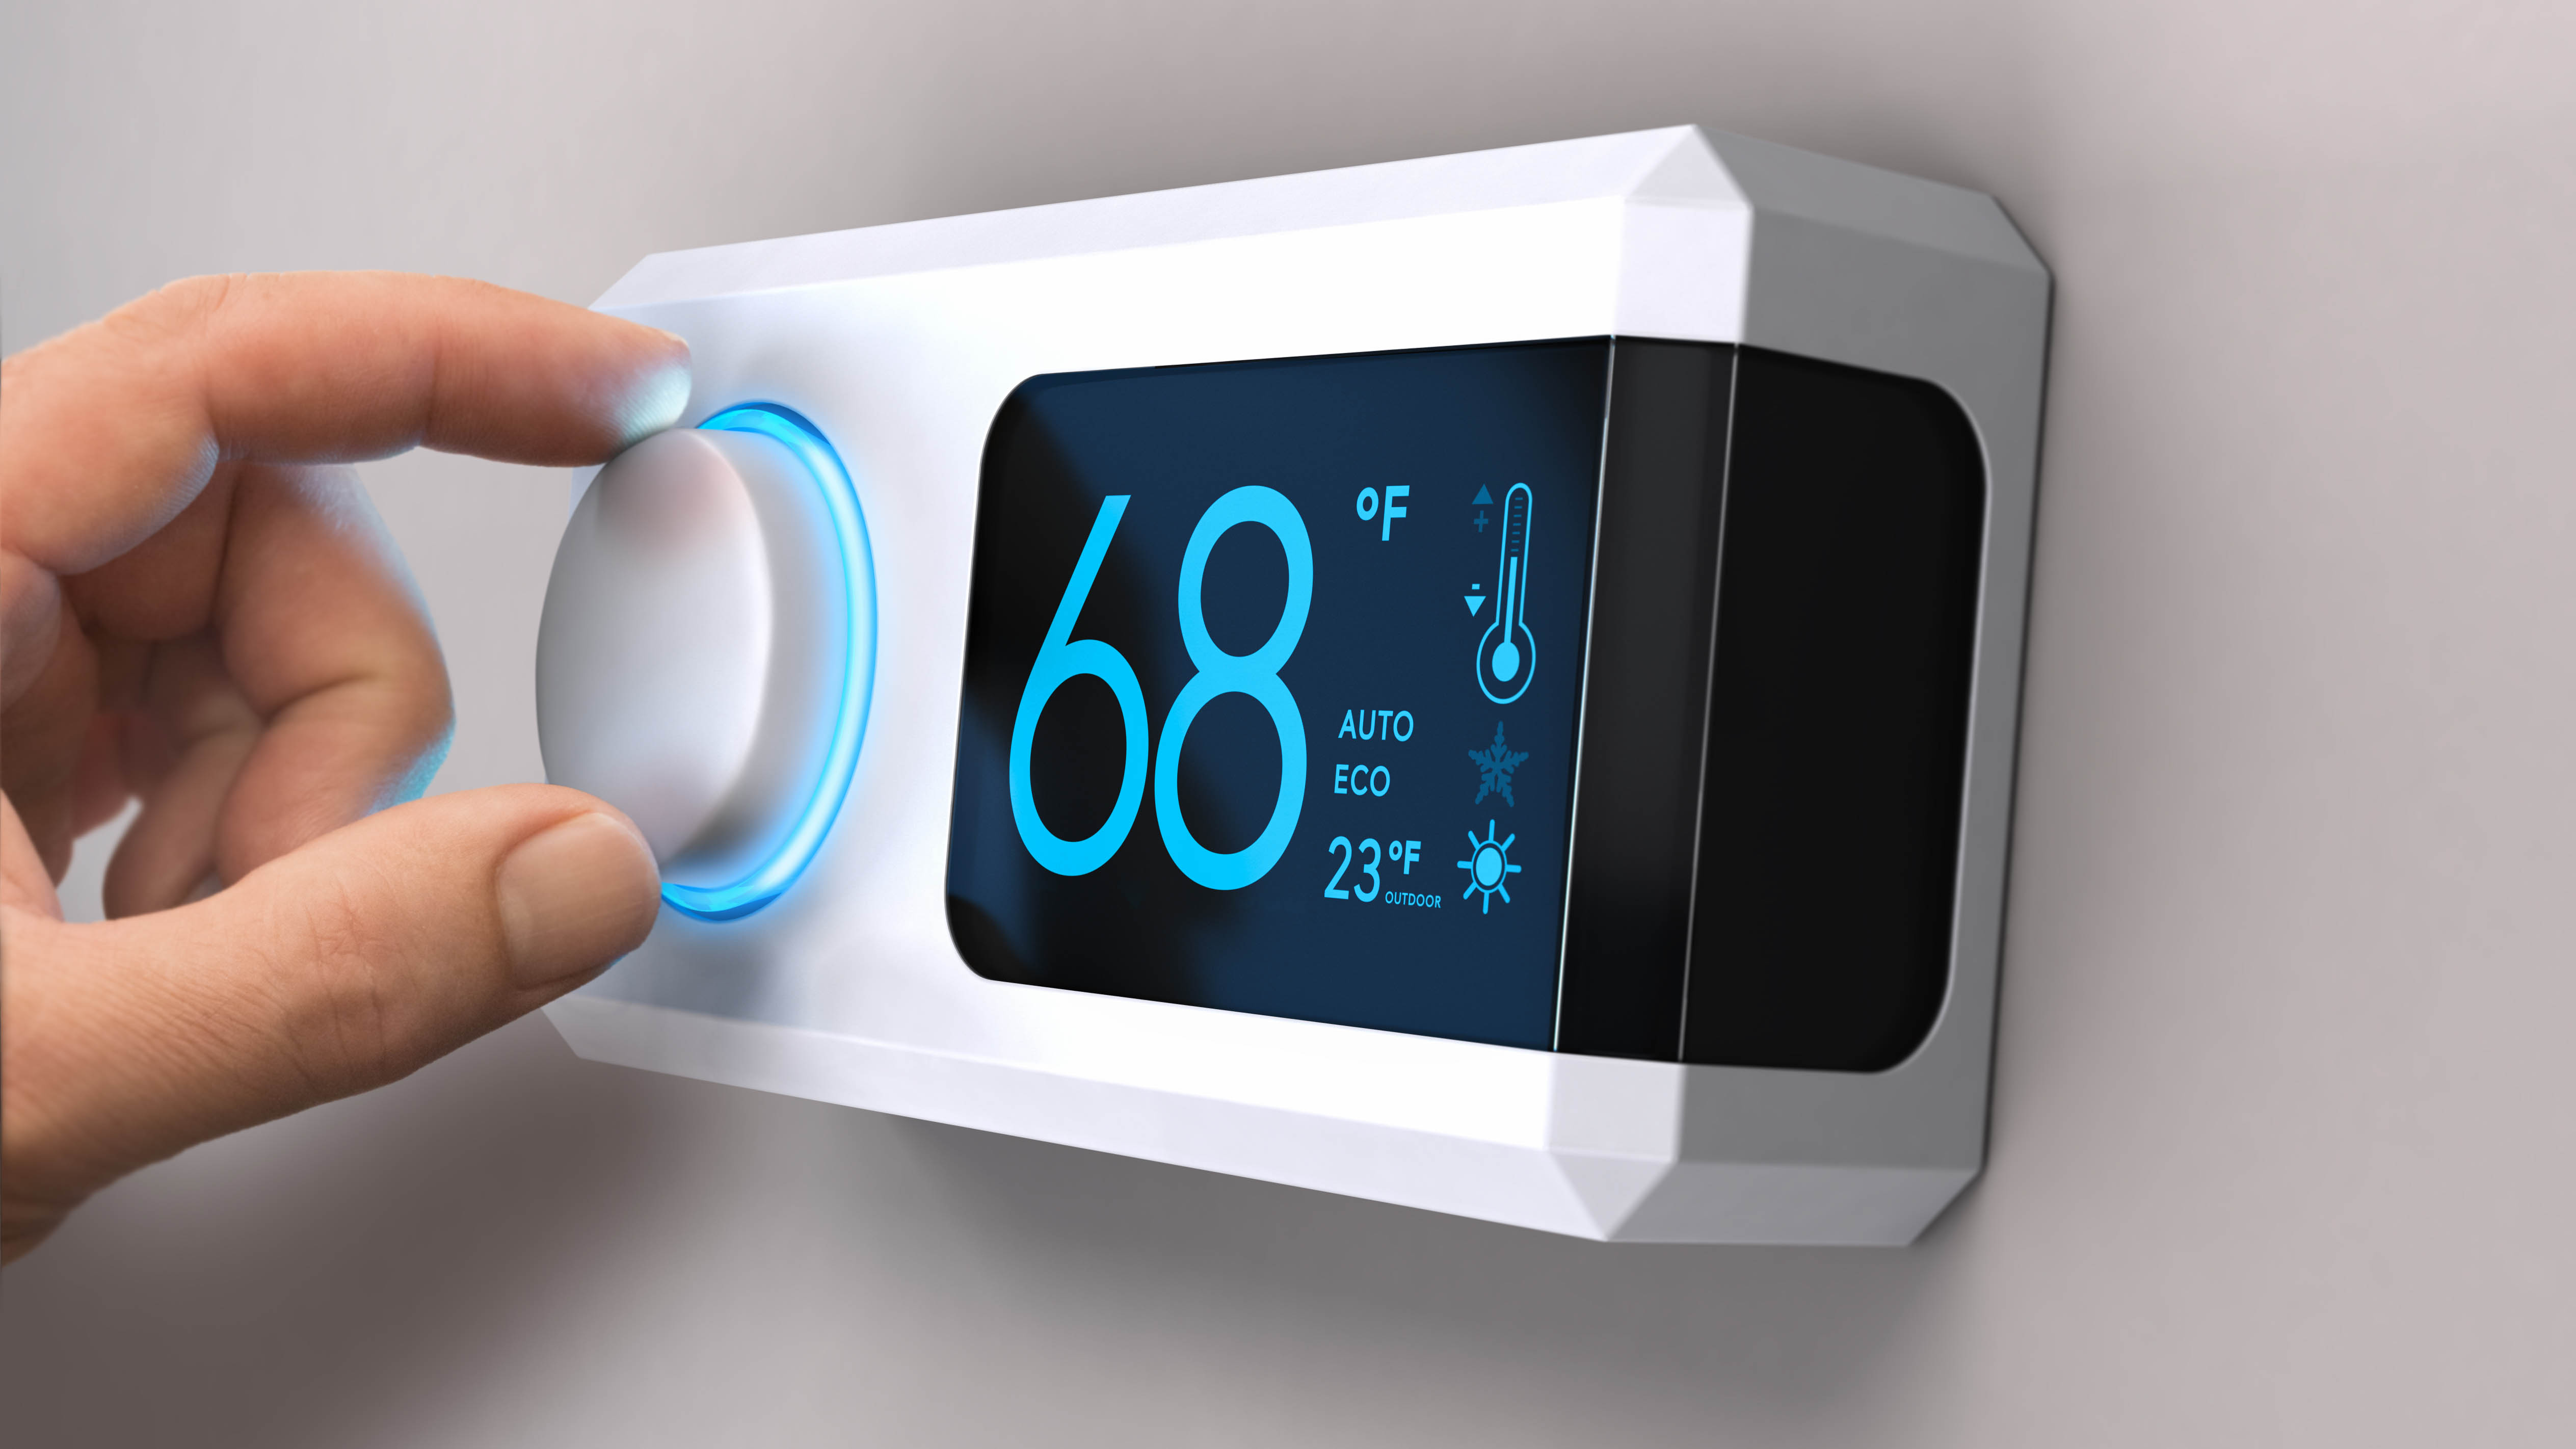 Set the thermostat to 68 degrees Fahrenheit